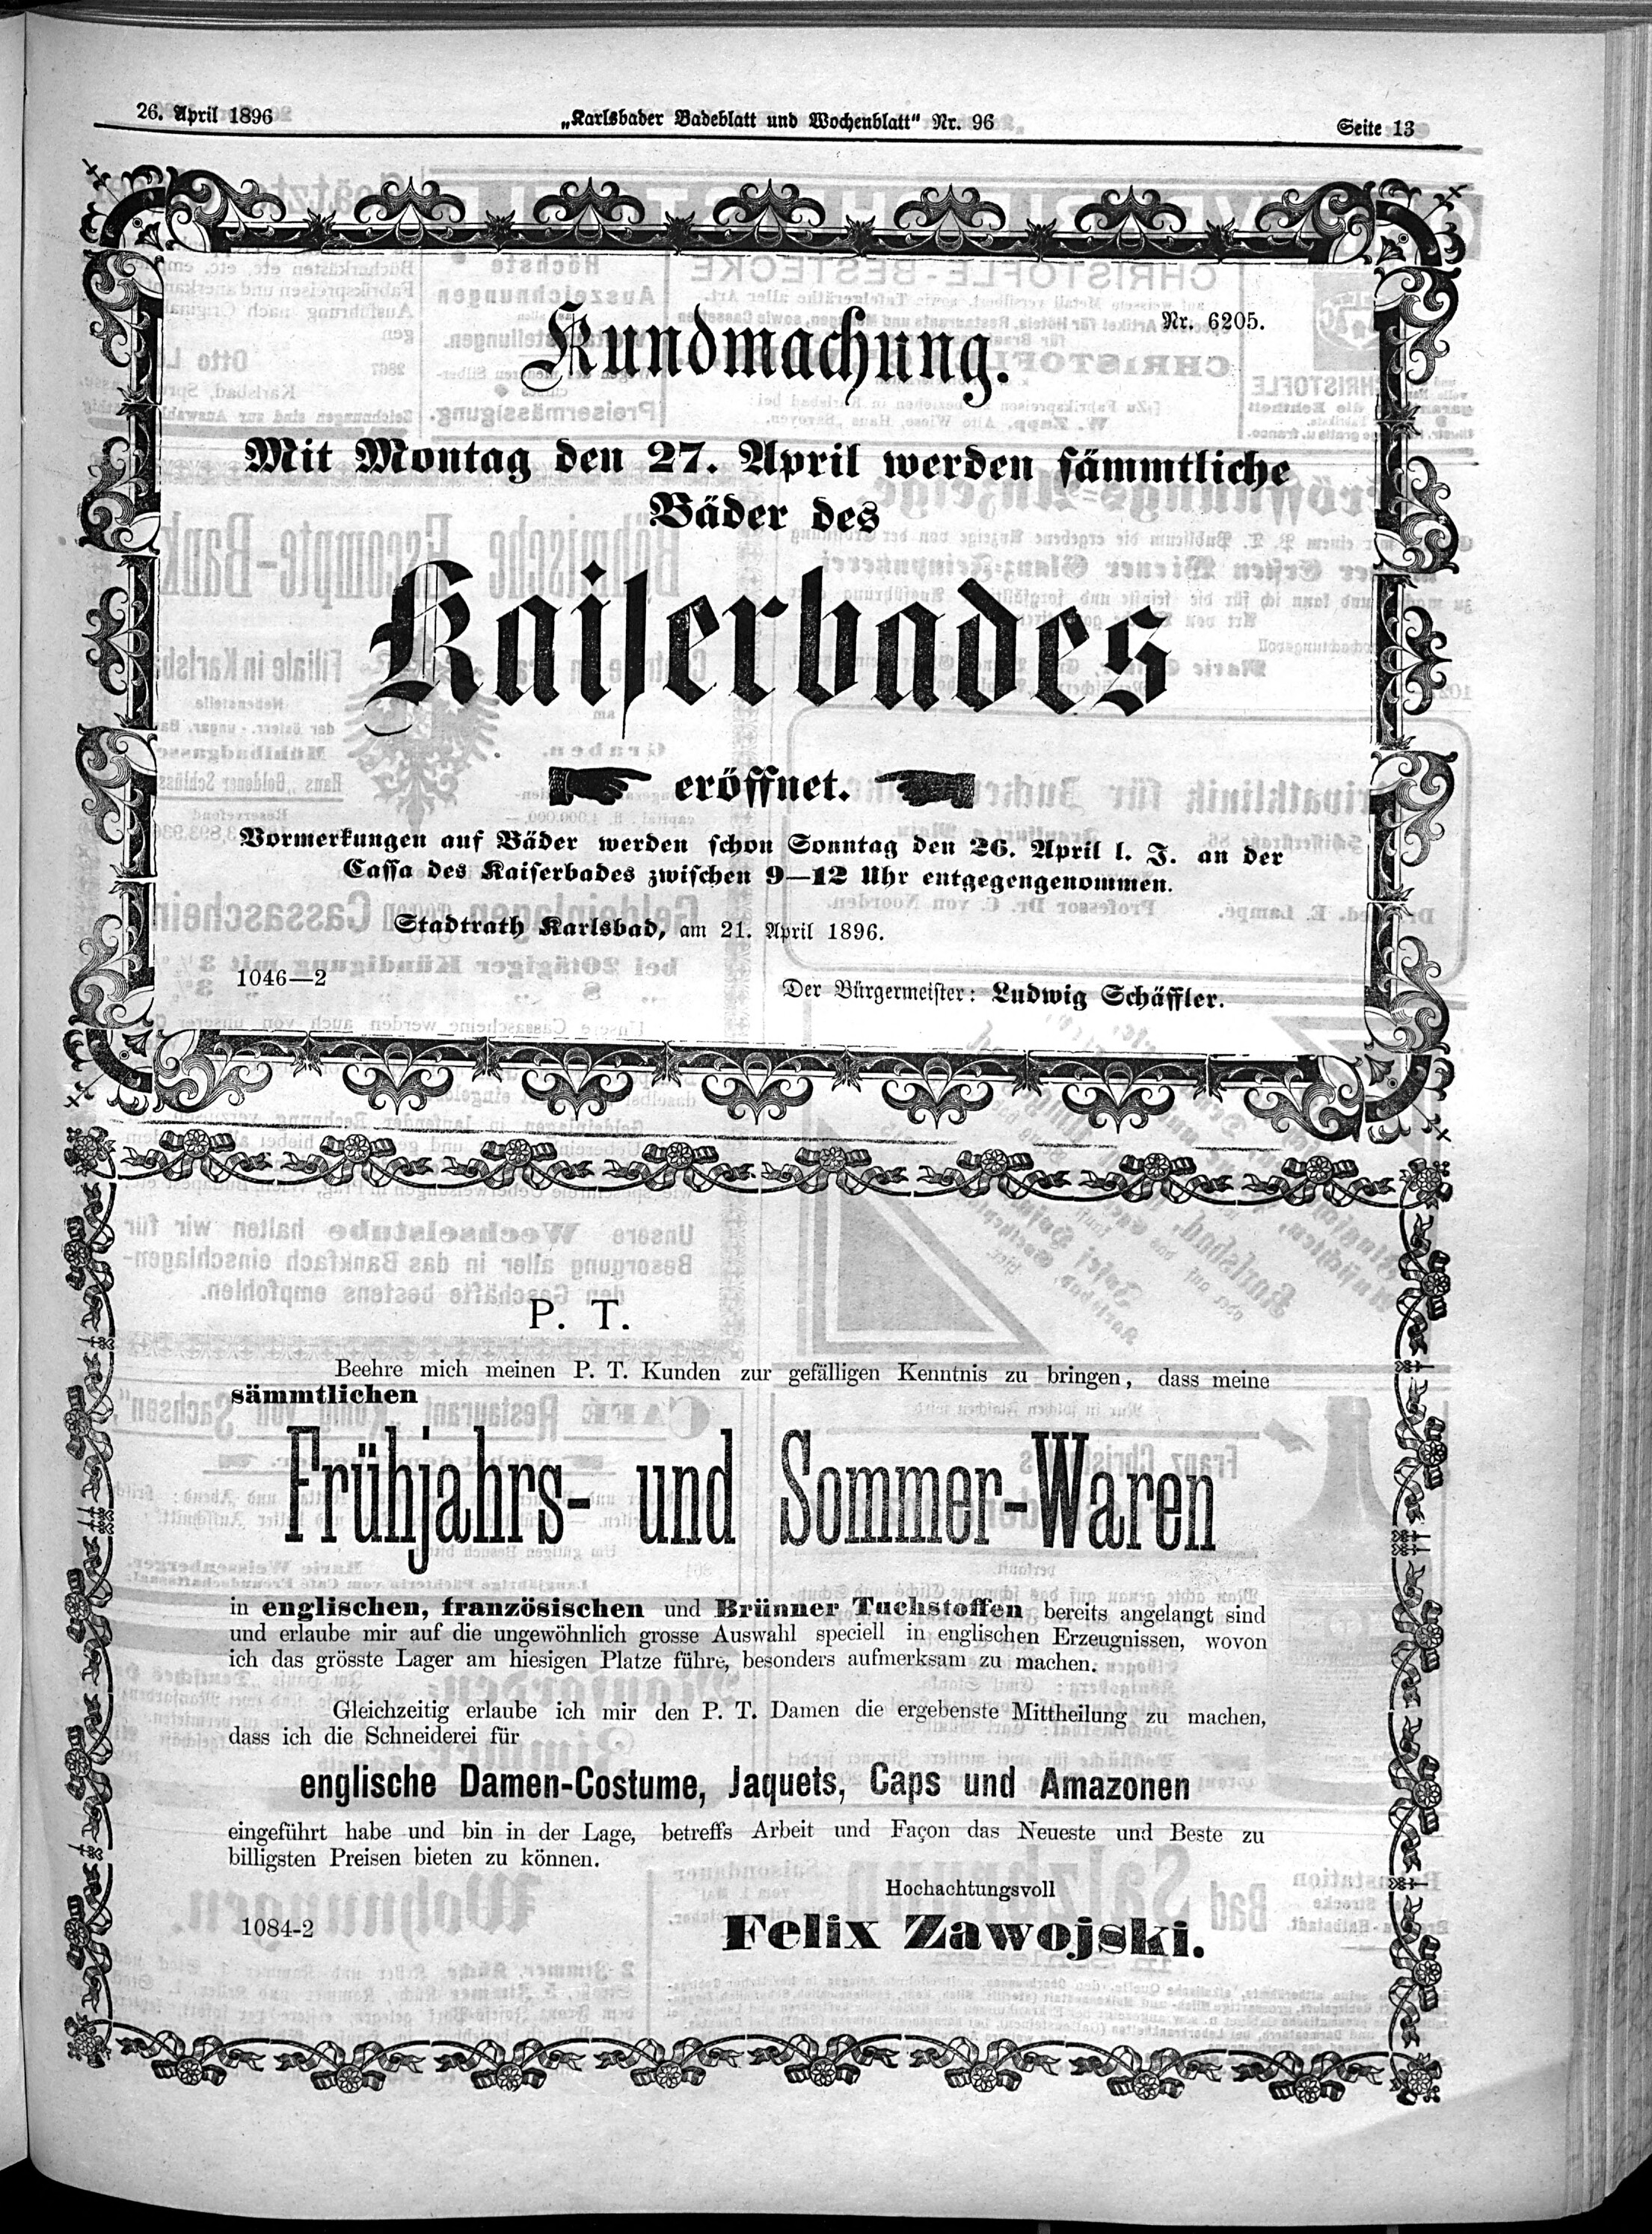 13. karlsbader-badeblatt-1896-04-26-n96_4205